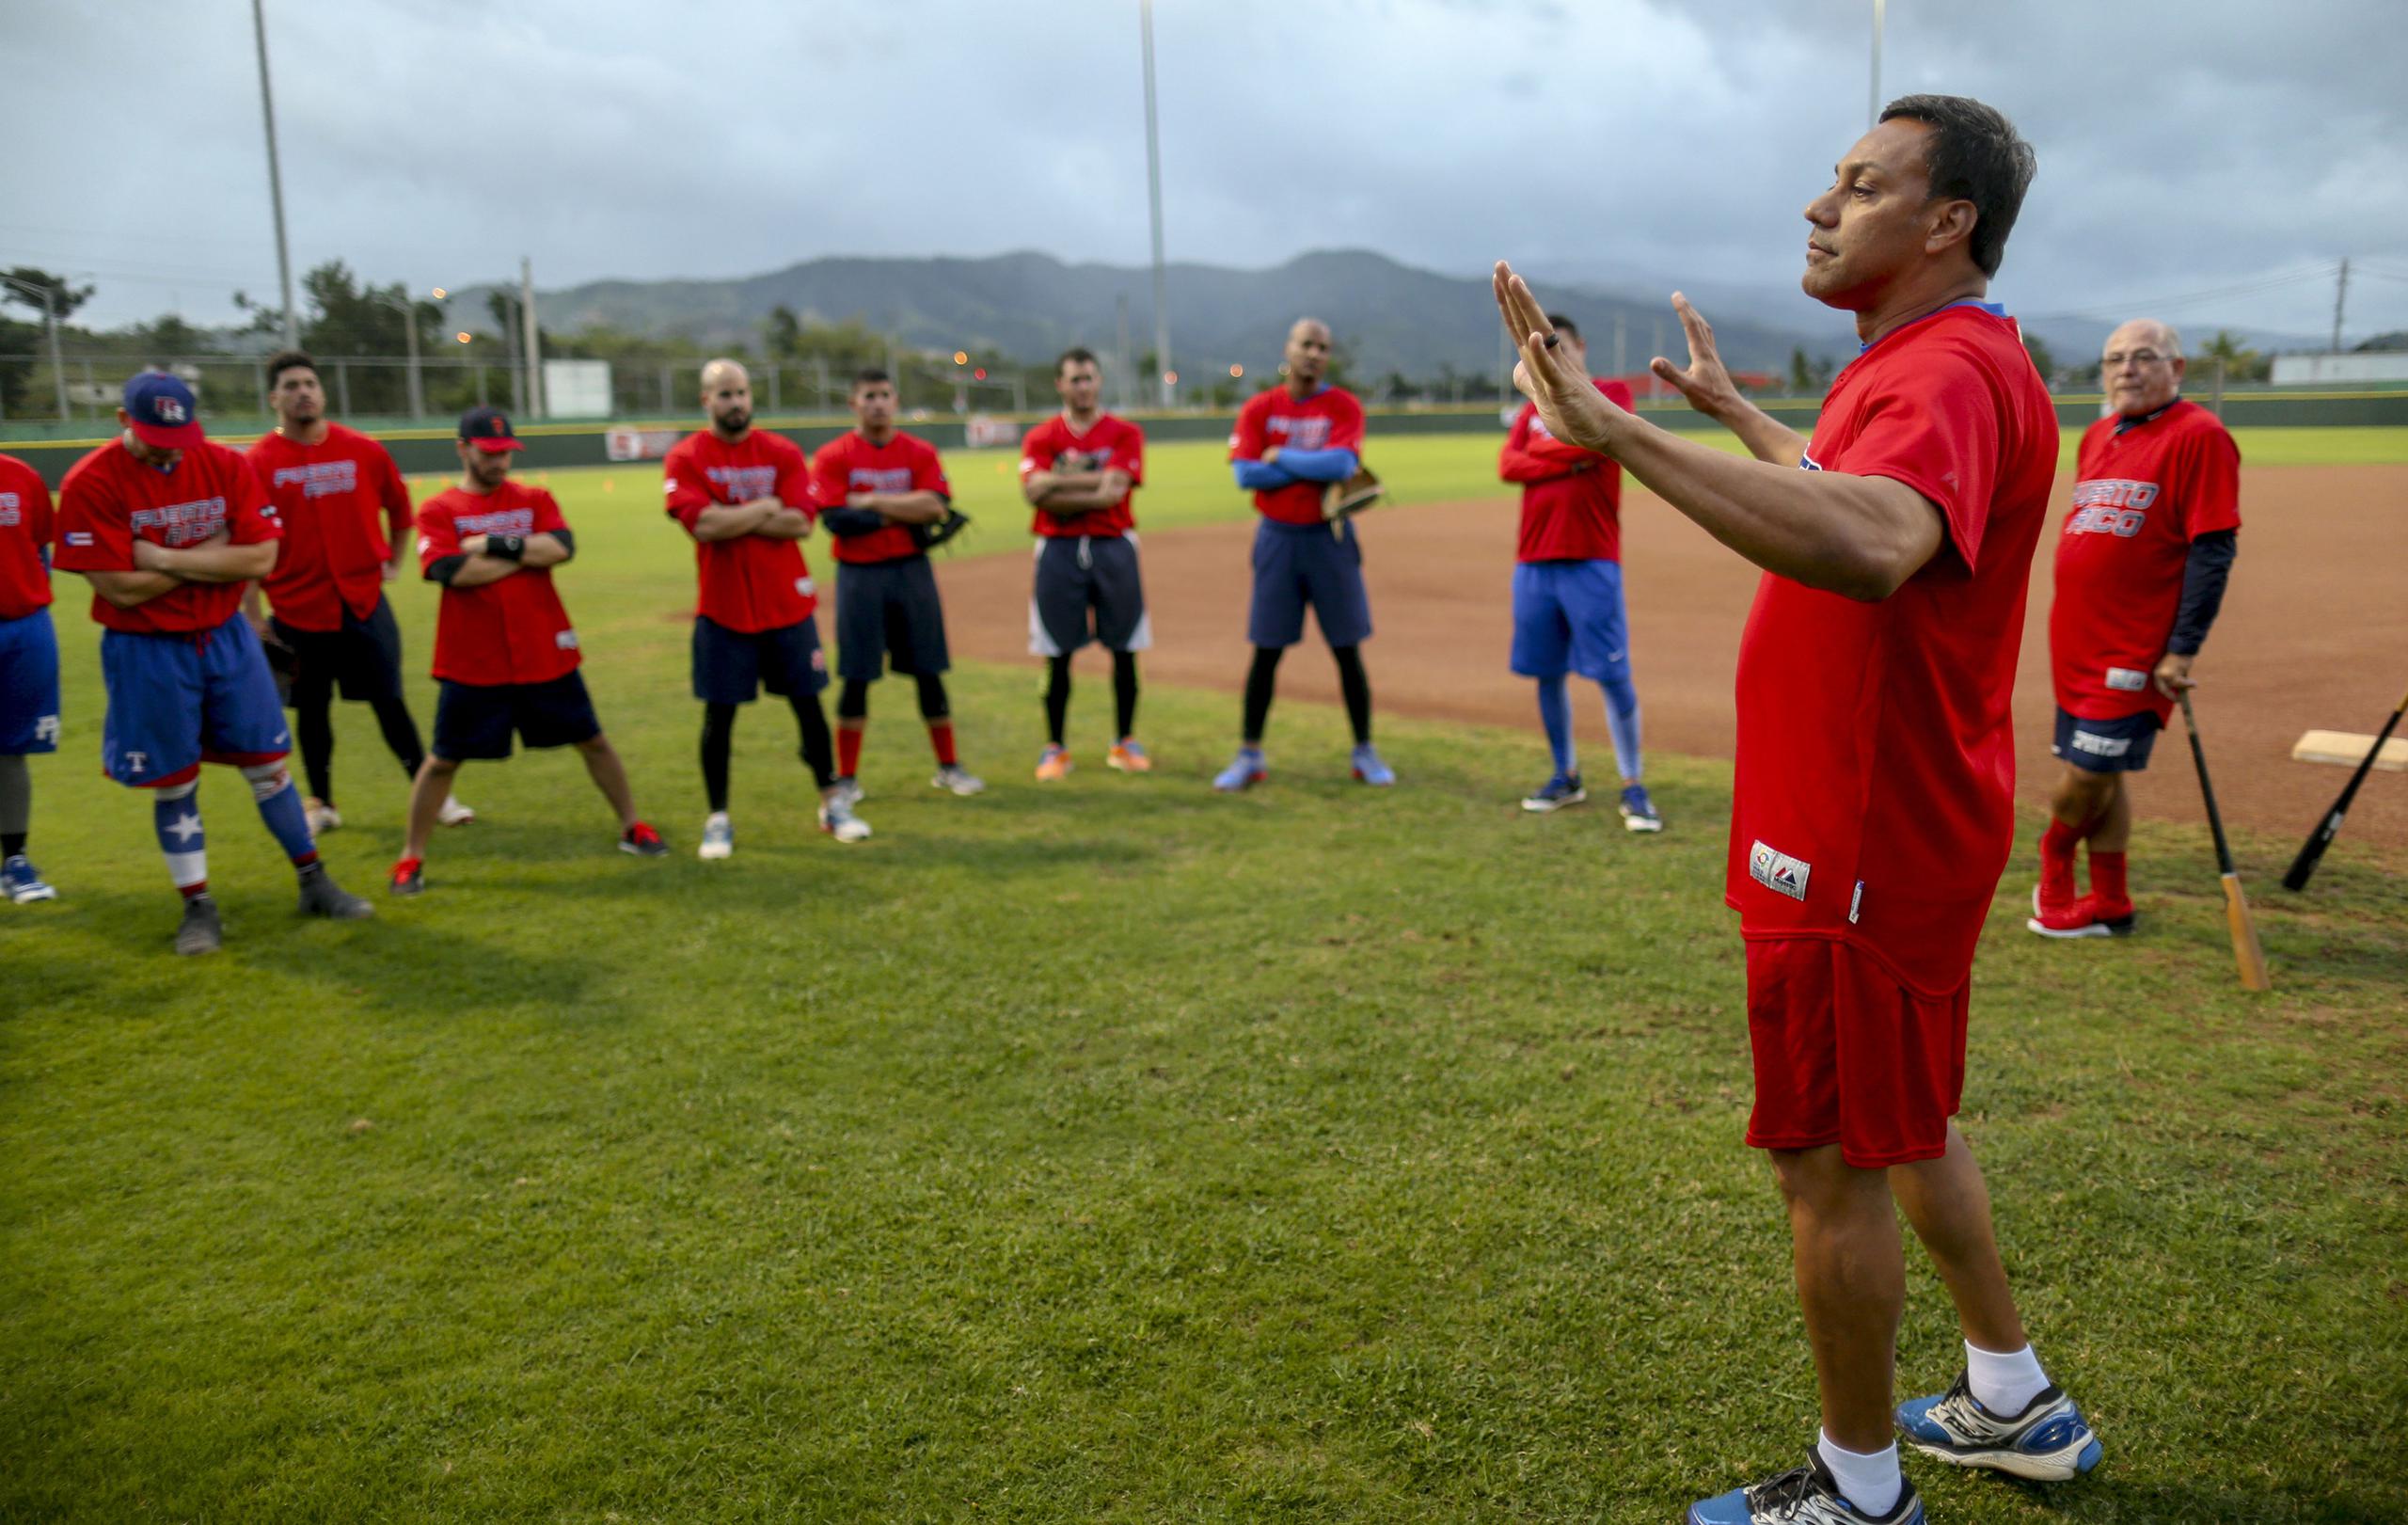 El Equipo Nacional de Béisbol había programado viajar a Surprise, Arizona, el 20 de marzo. Puerto Rico es dirigido por Juan 'Igor' González.